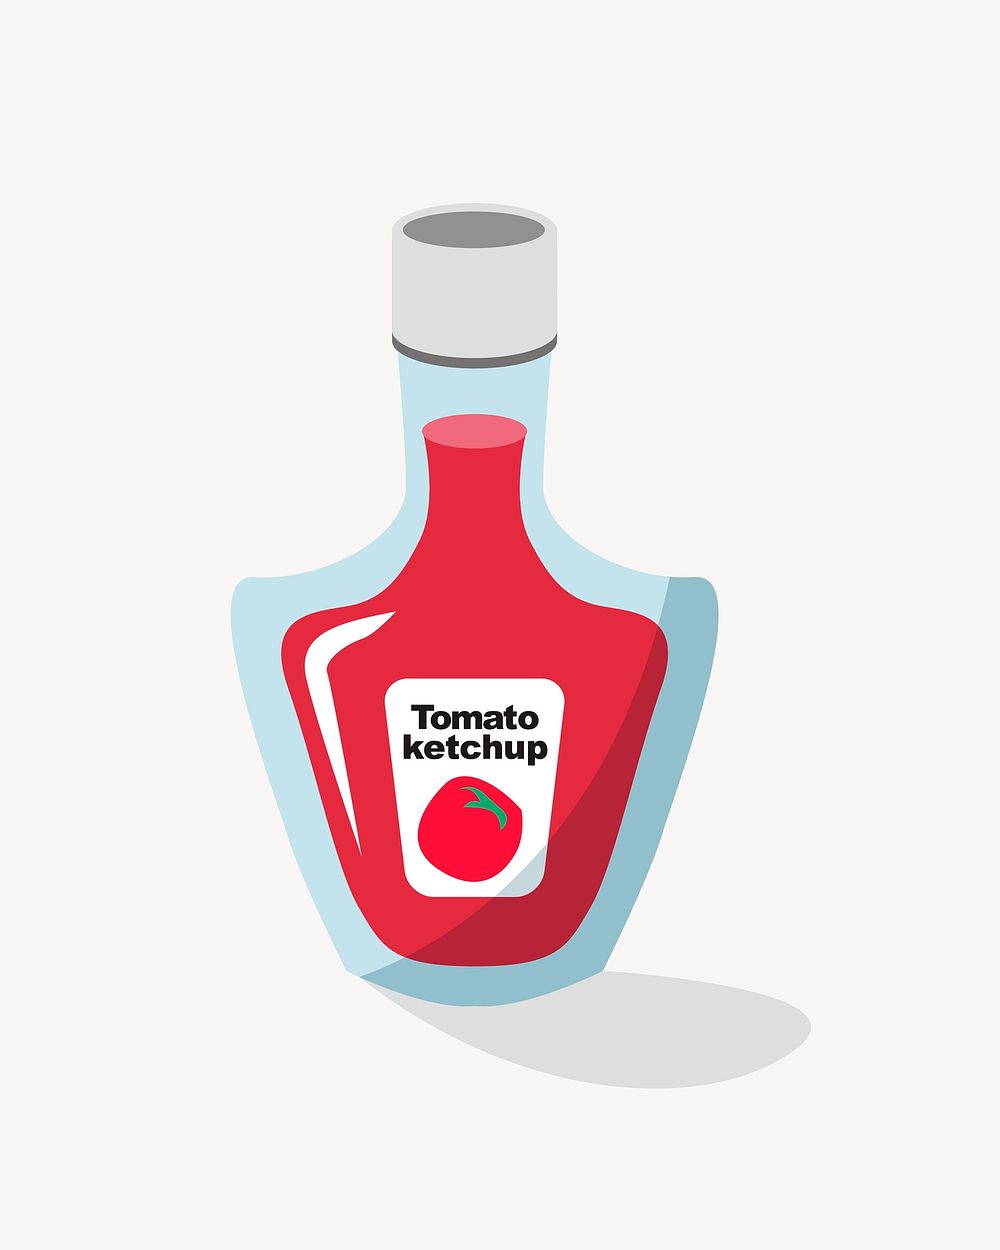 Ketchup bottle illustration, clip art. Free public domain CC0 image.